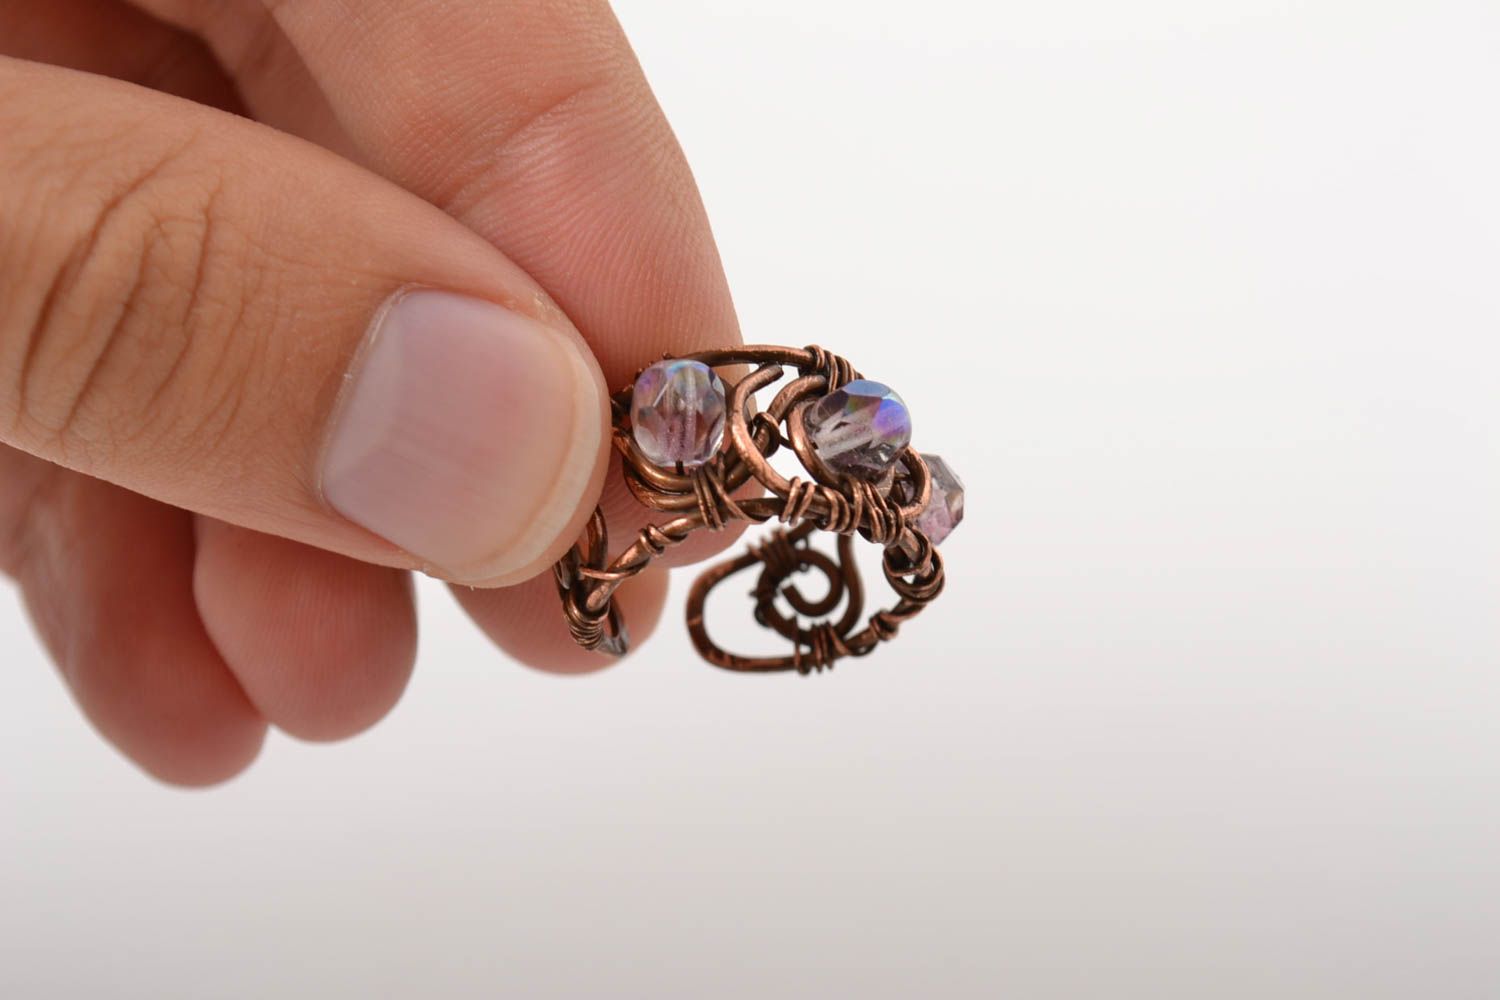 Красивое кольцо хэнд мэйд украшение в технике wire wrap медное кольцо со стеклом фото 4